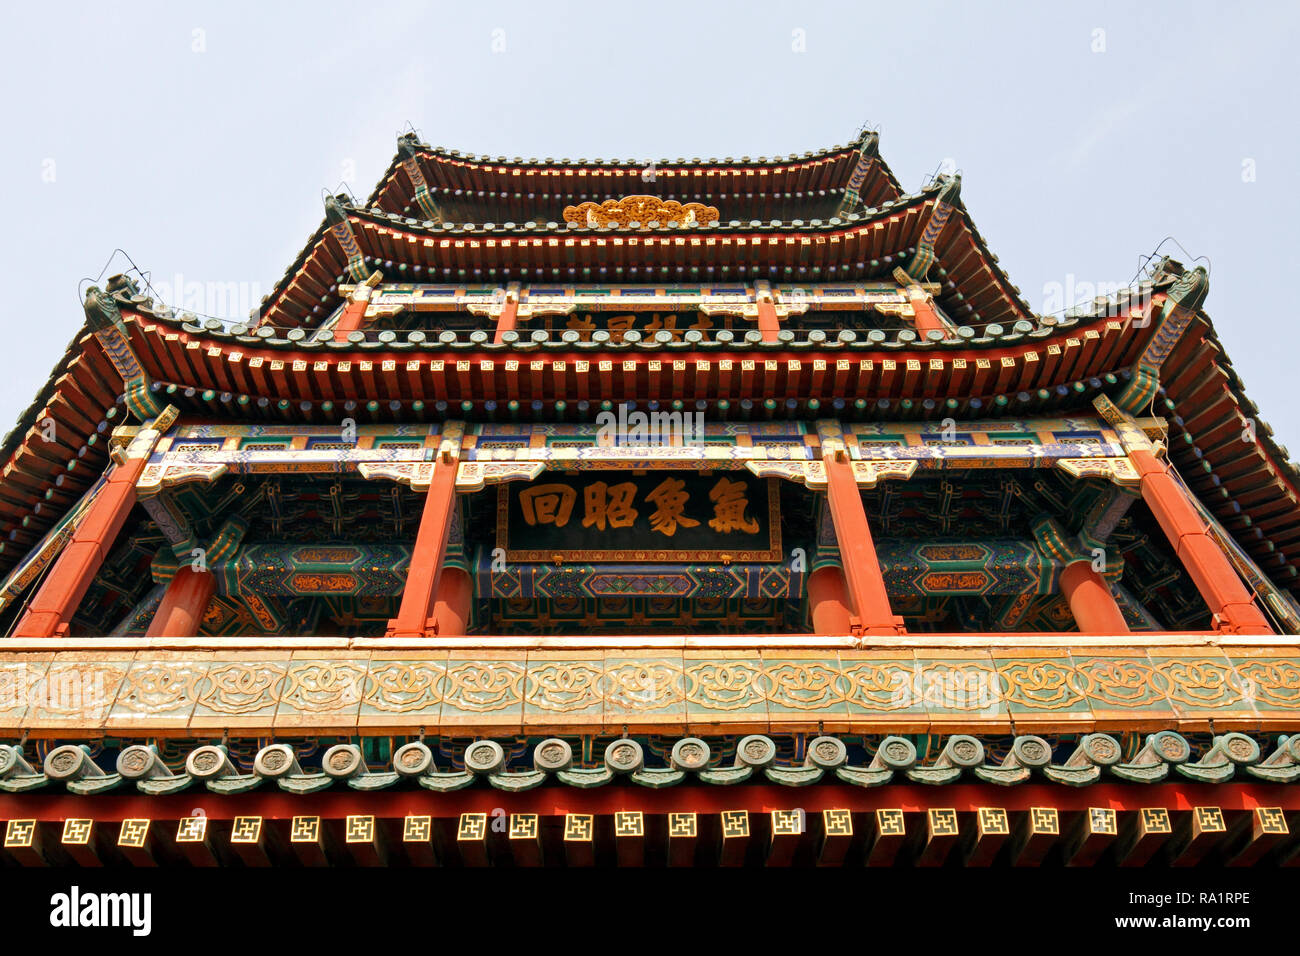 In piedi sulla cima della collina di longevità, la torre o il tempio buddista di incenso o fragranza è il più alto edificio nel palazzo d'estate. Pechino CINA. Foto Stock